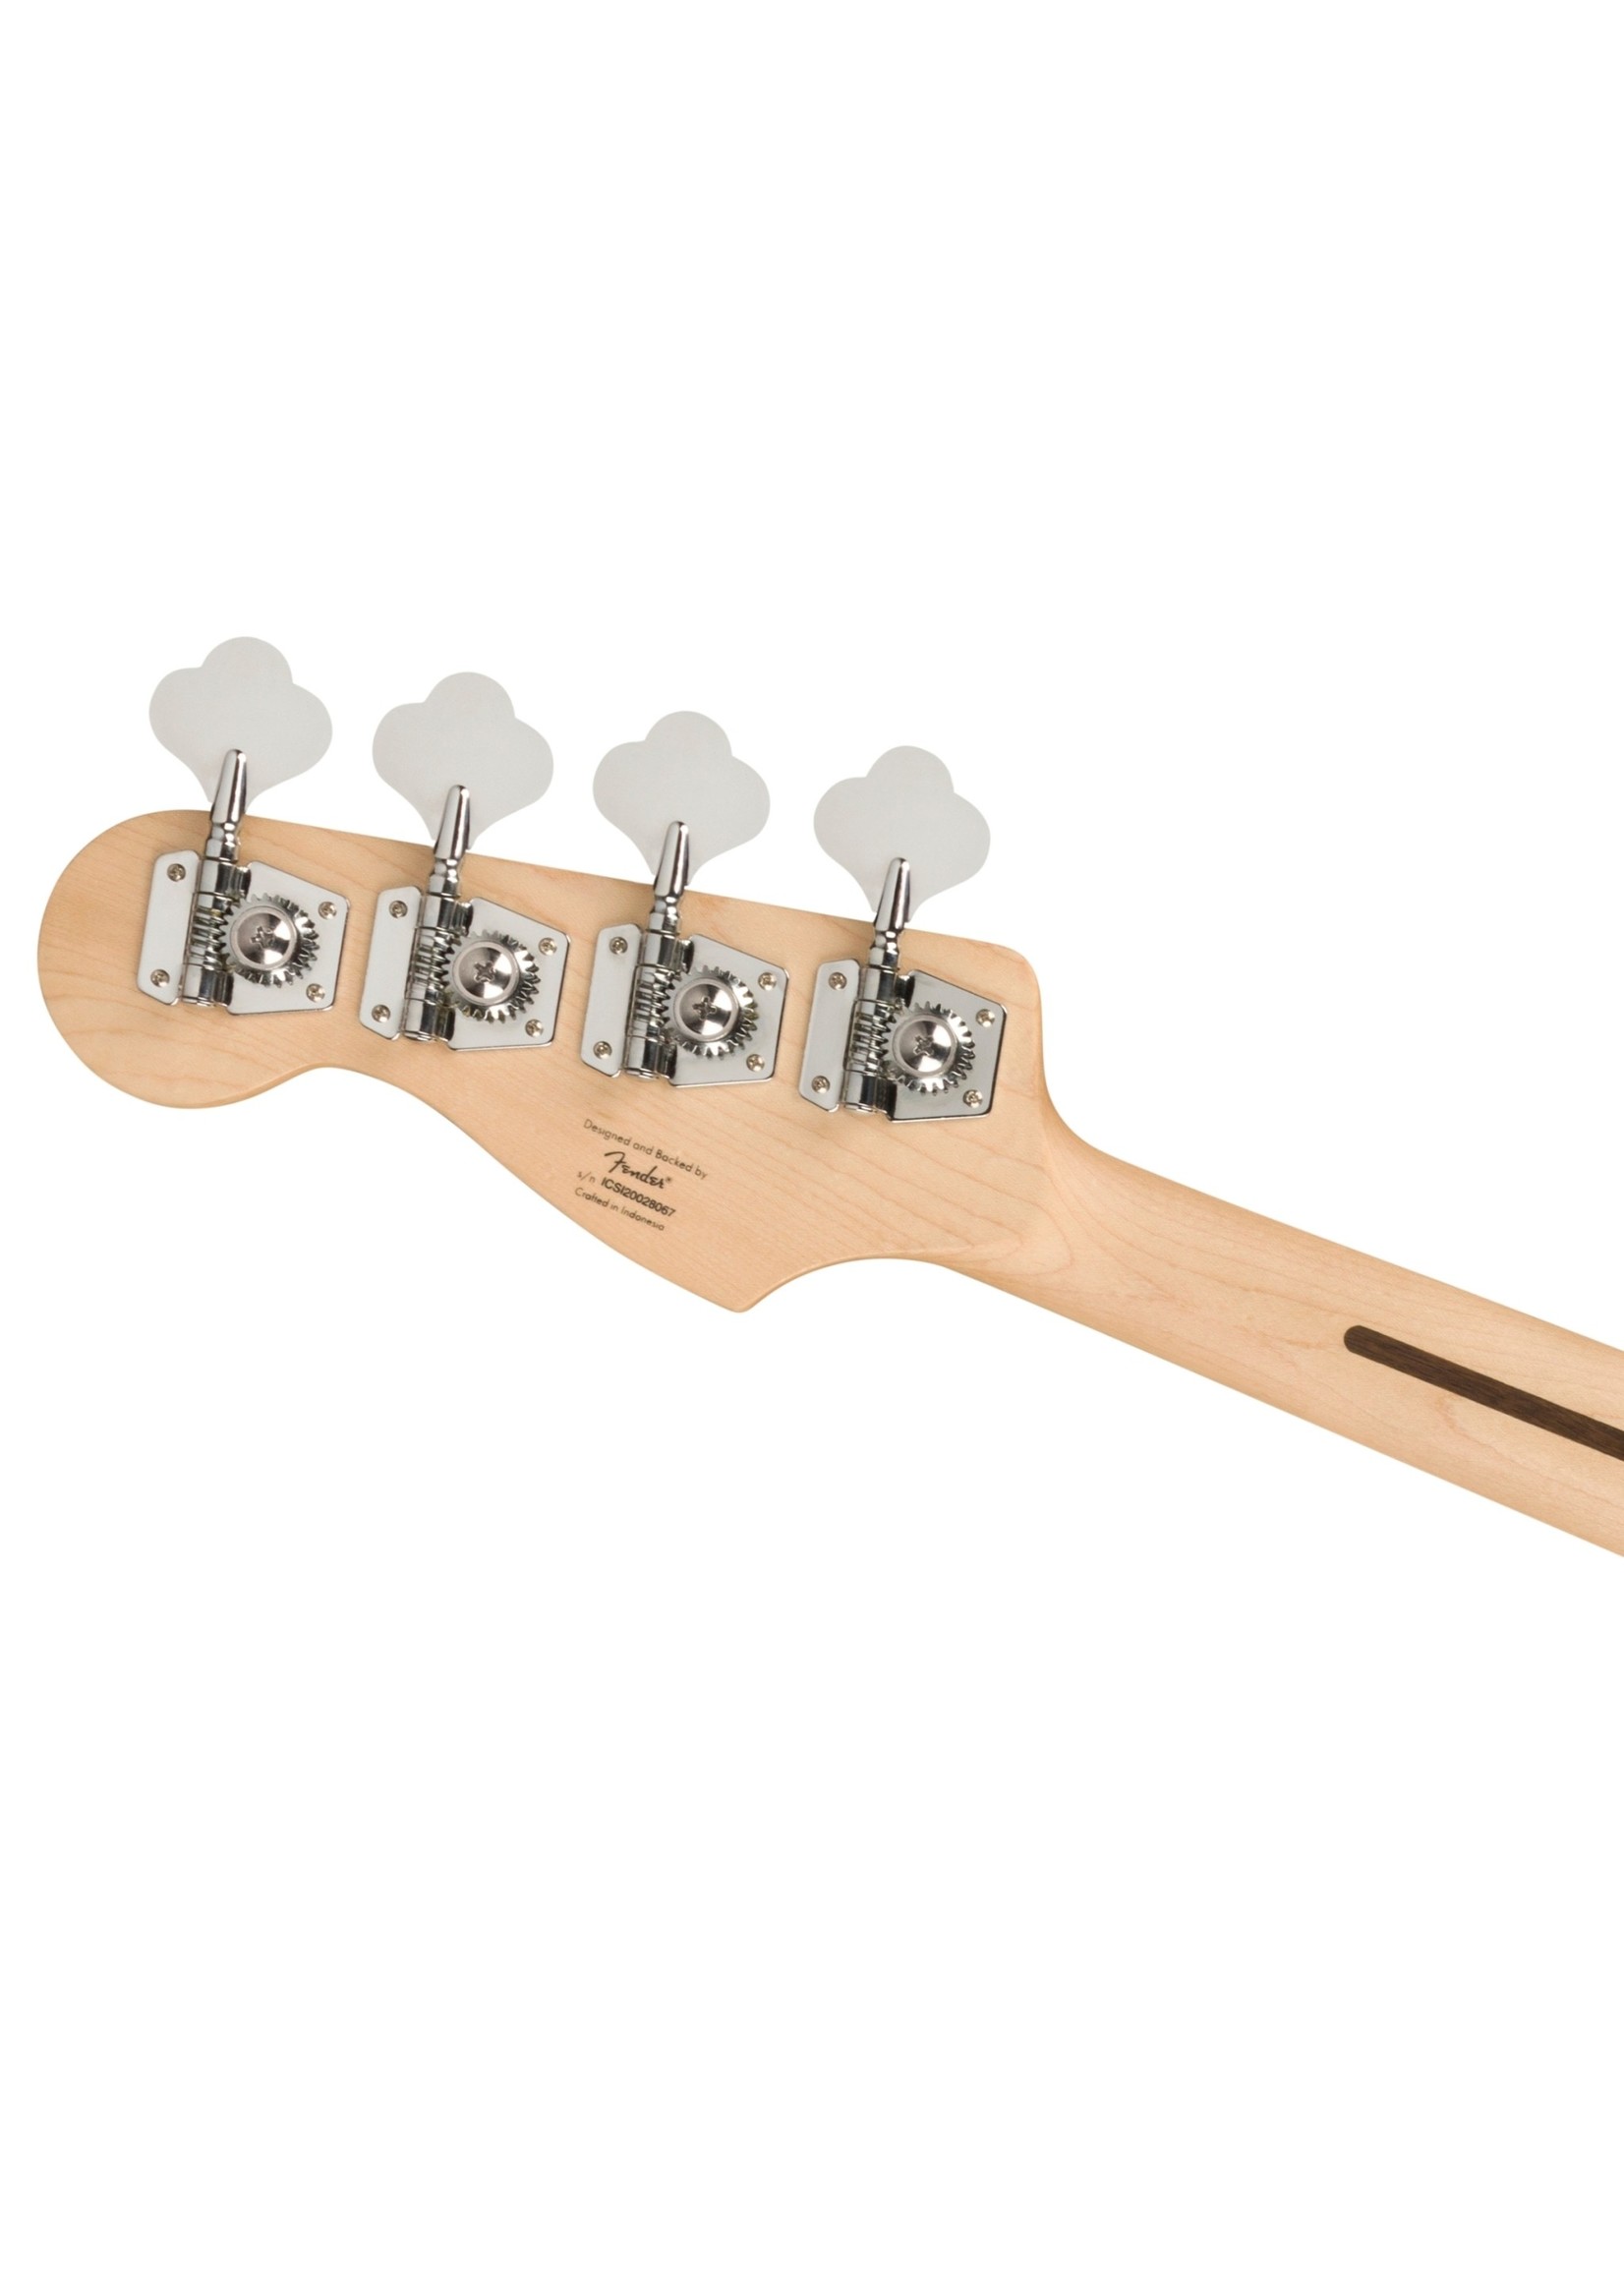 Fender Fender Affinity Series Jazz Bass, Laurel Fingerboard, Black Pickguard, Burgundy Mist